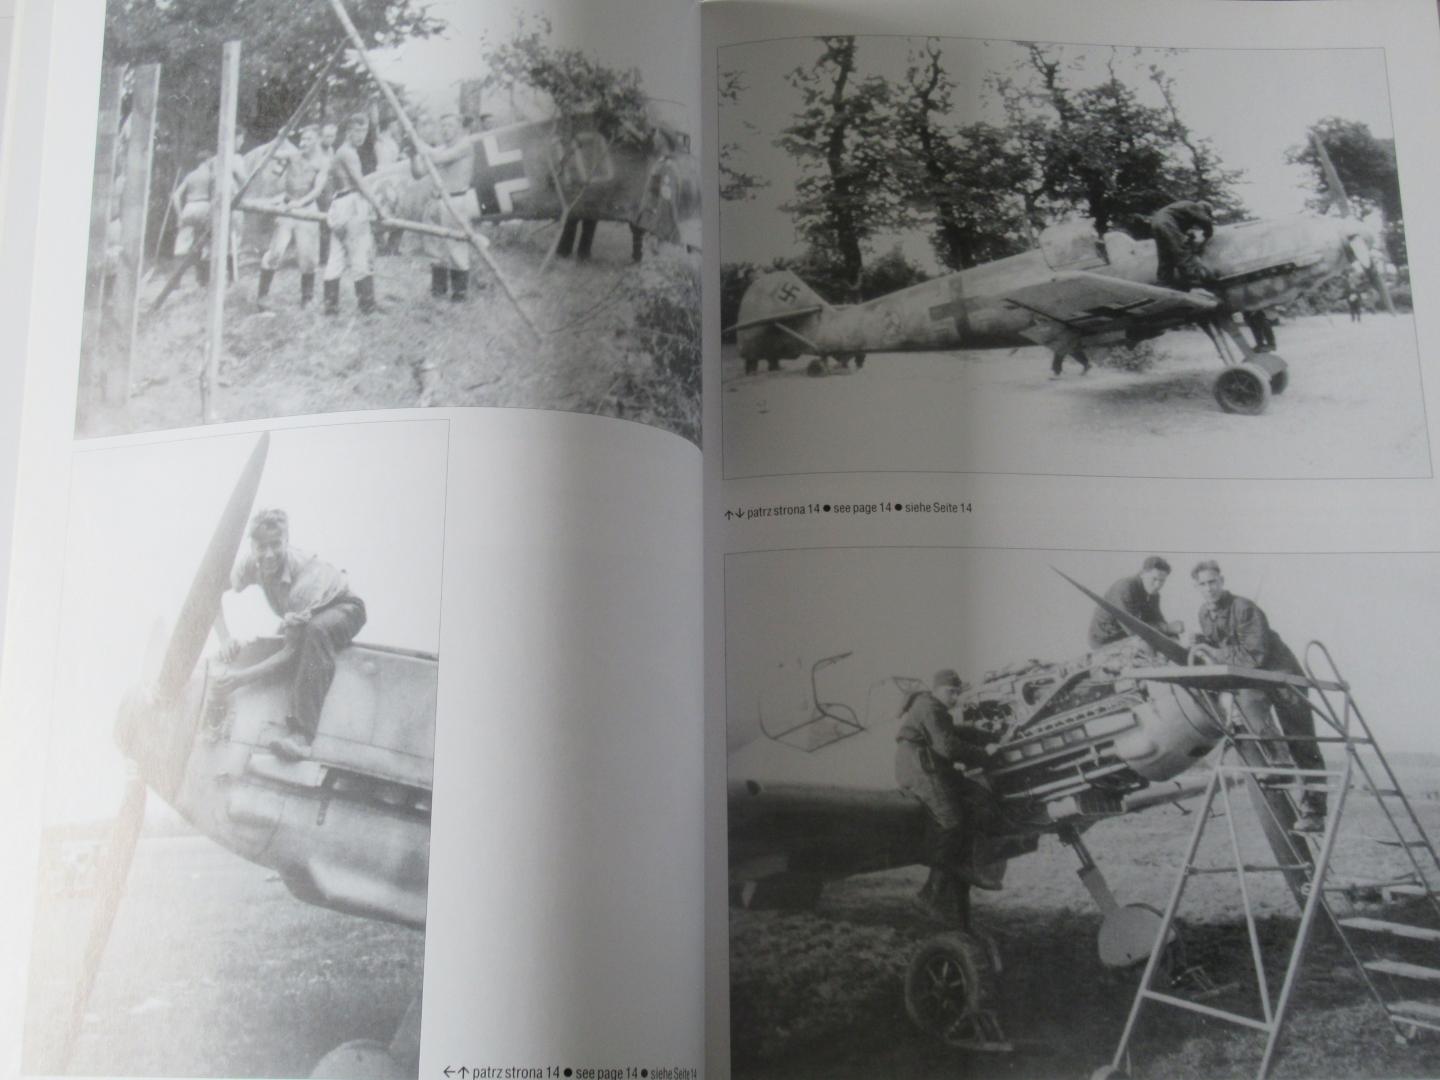 Trojca, Waldemar - Messerschmitt Me 109 Photo Volume 1